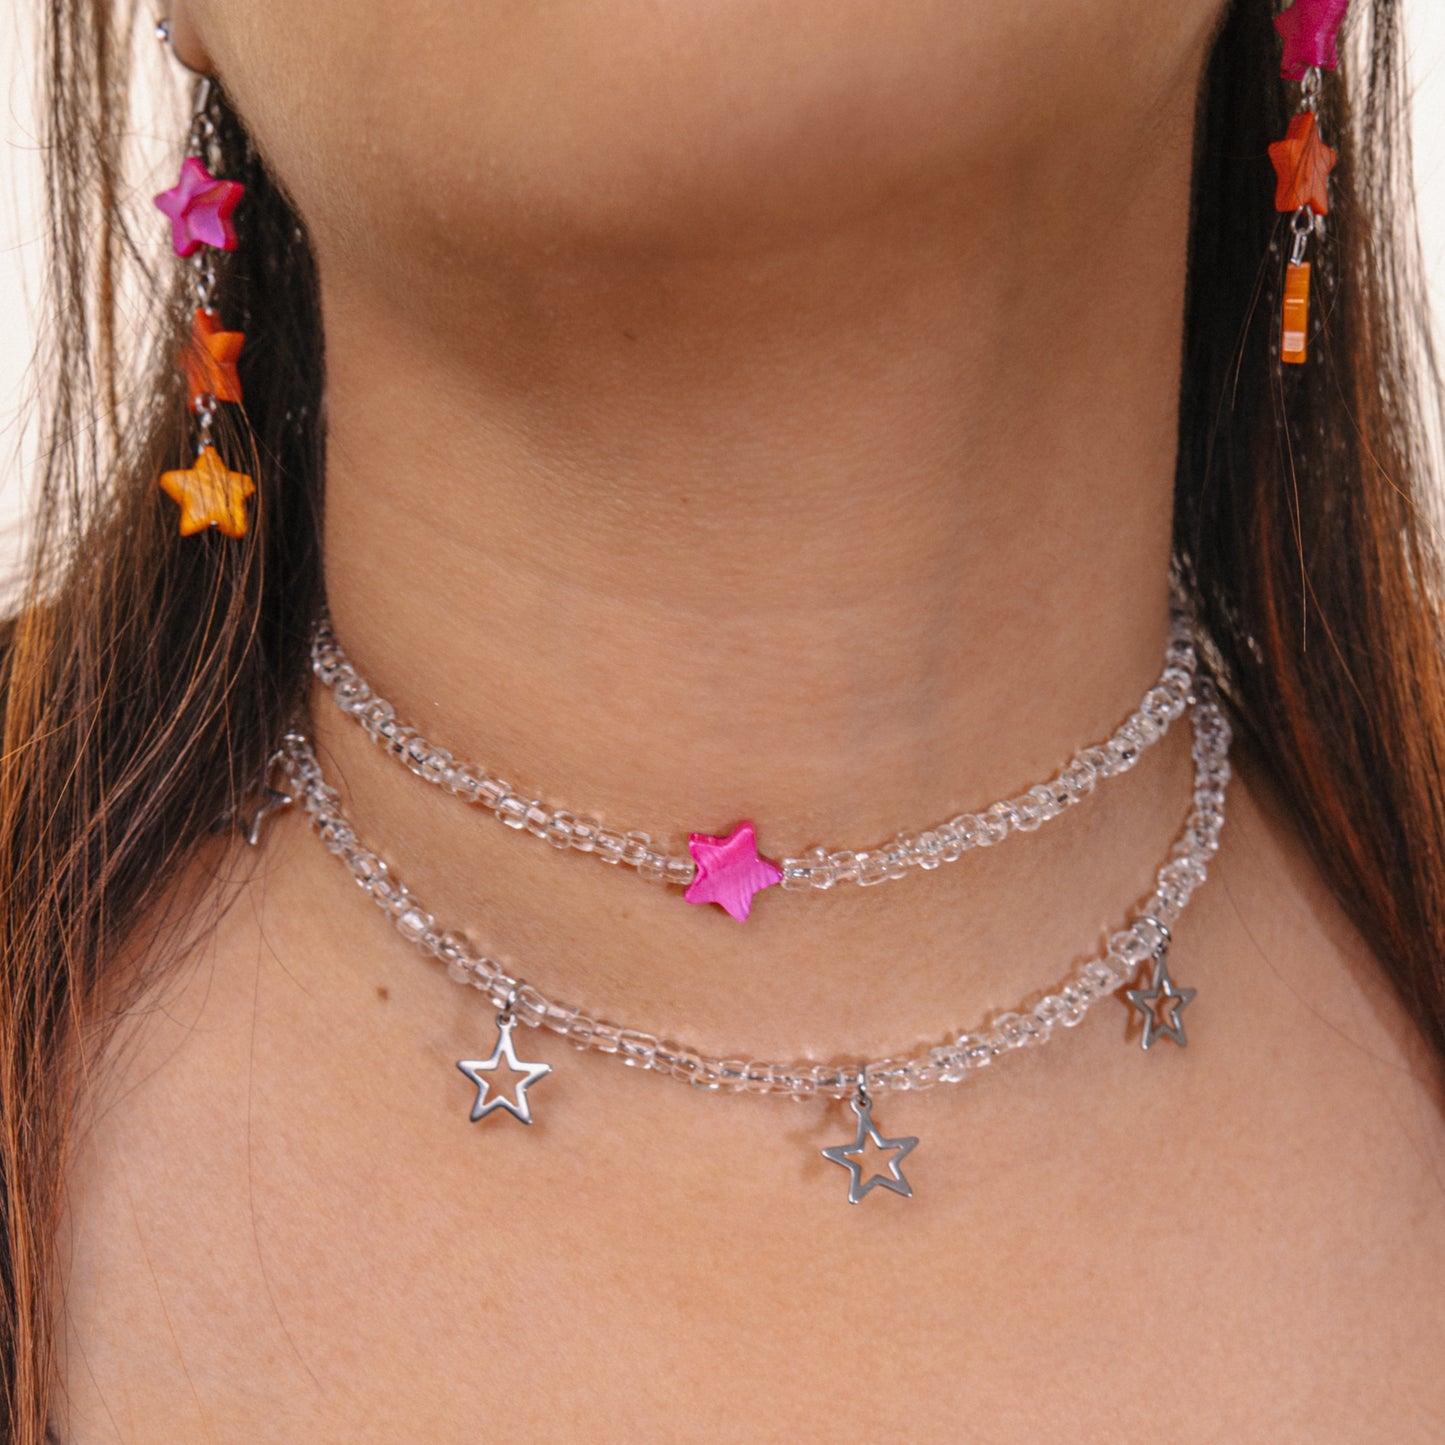 nebula necklace